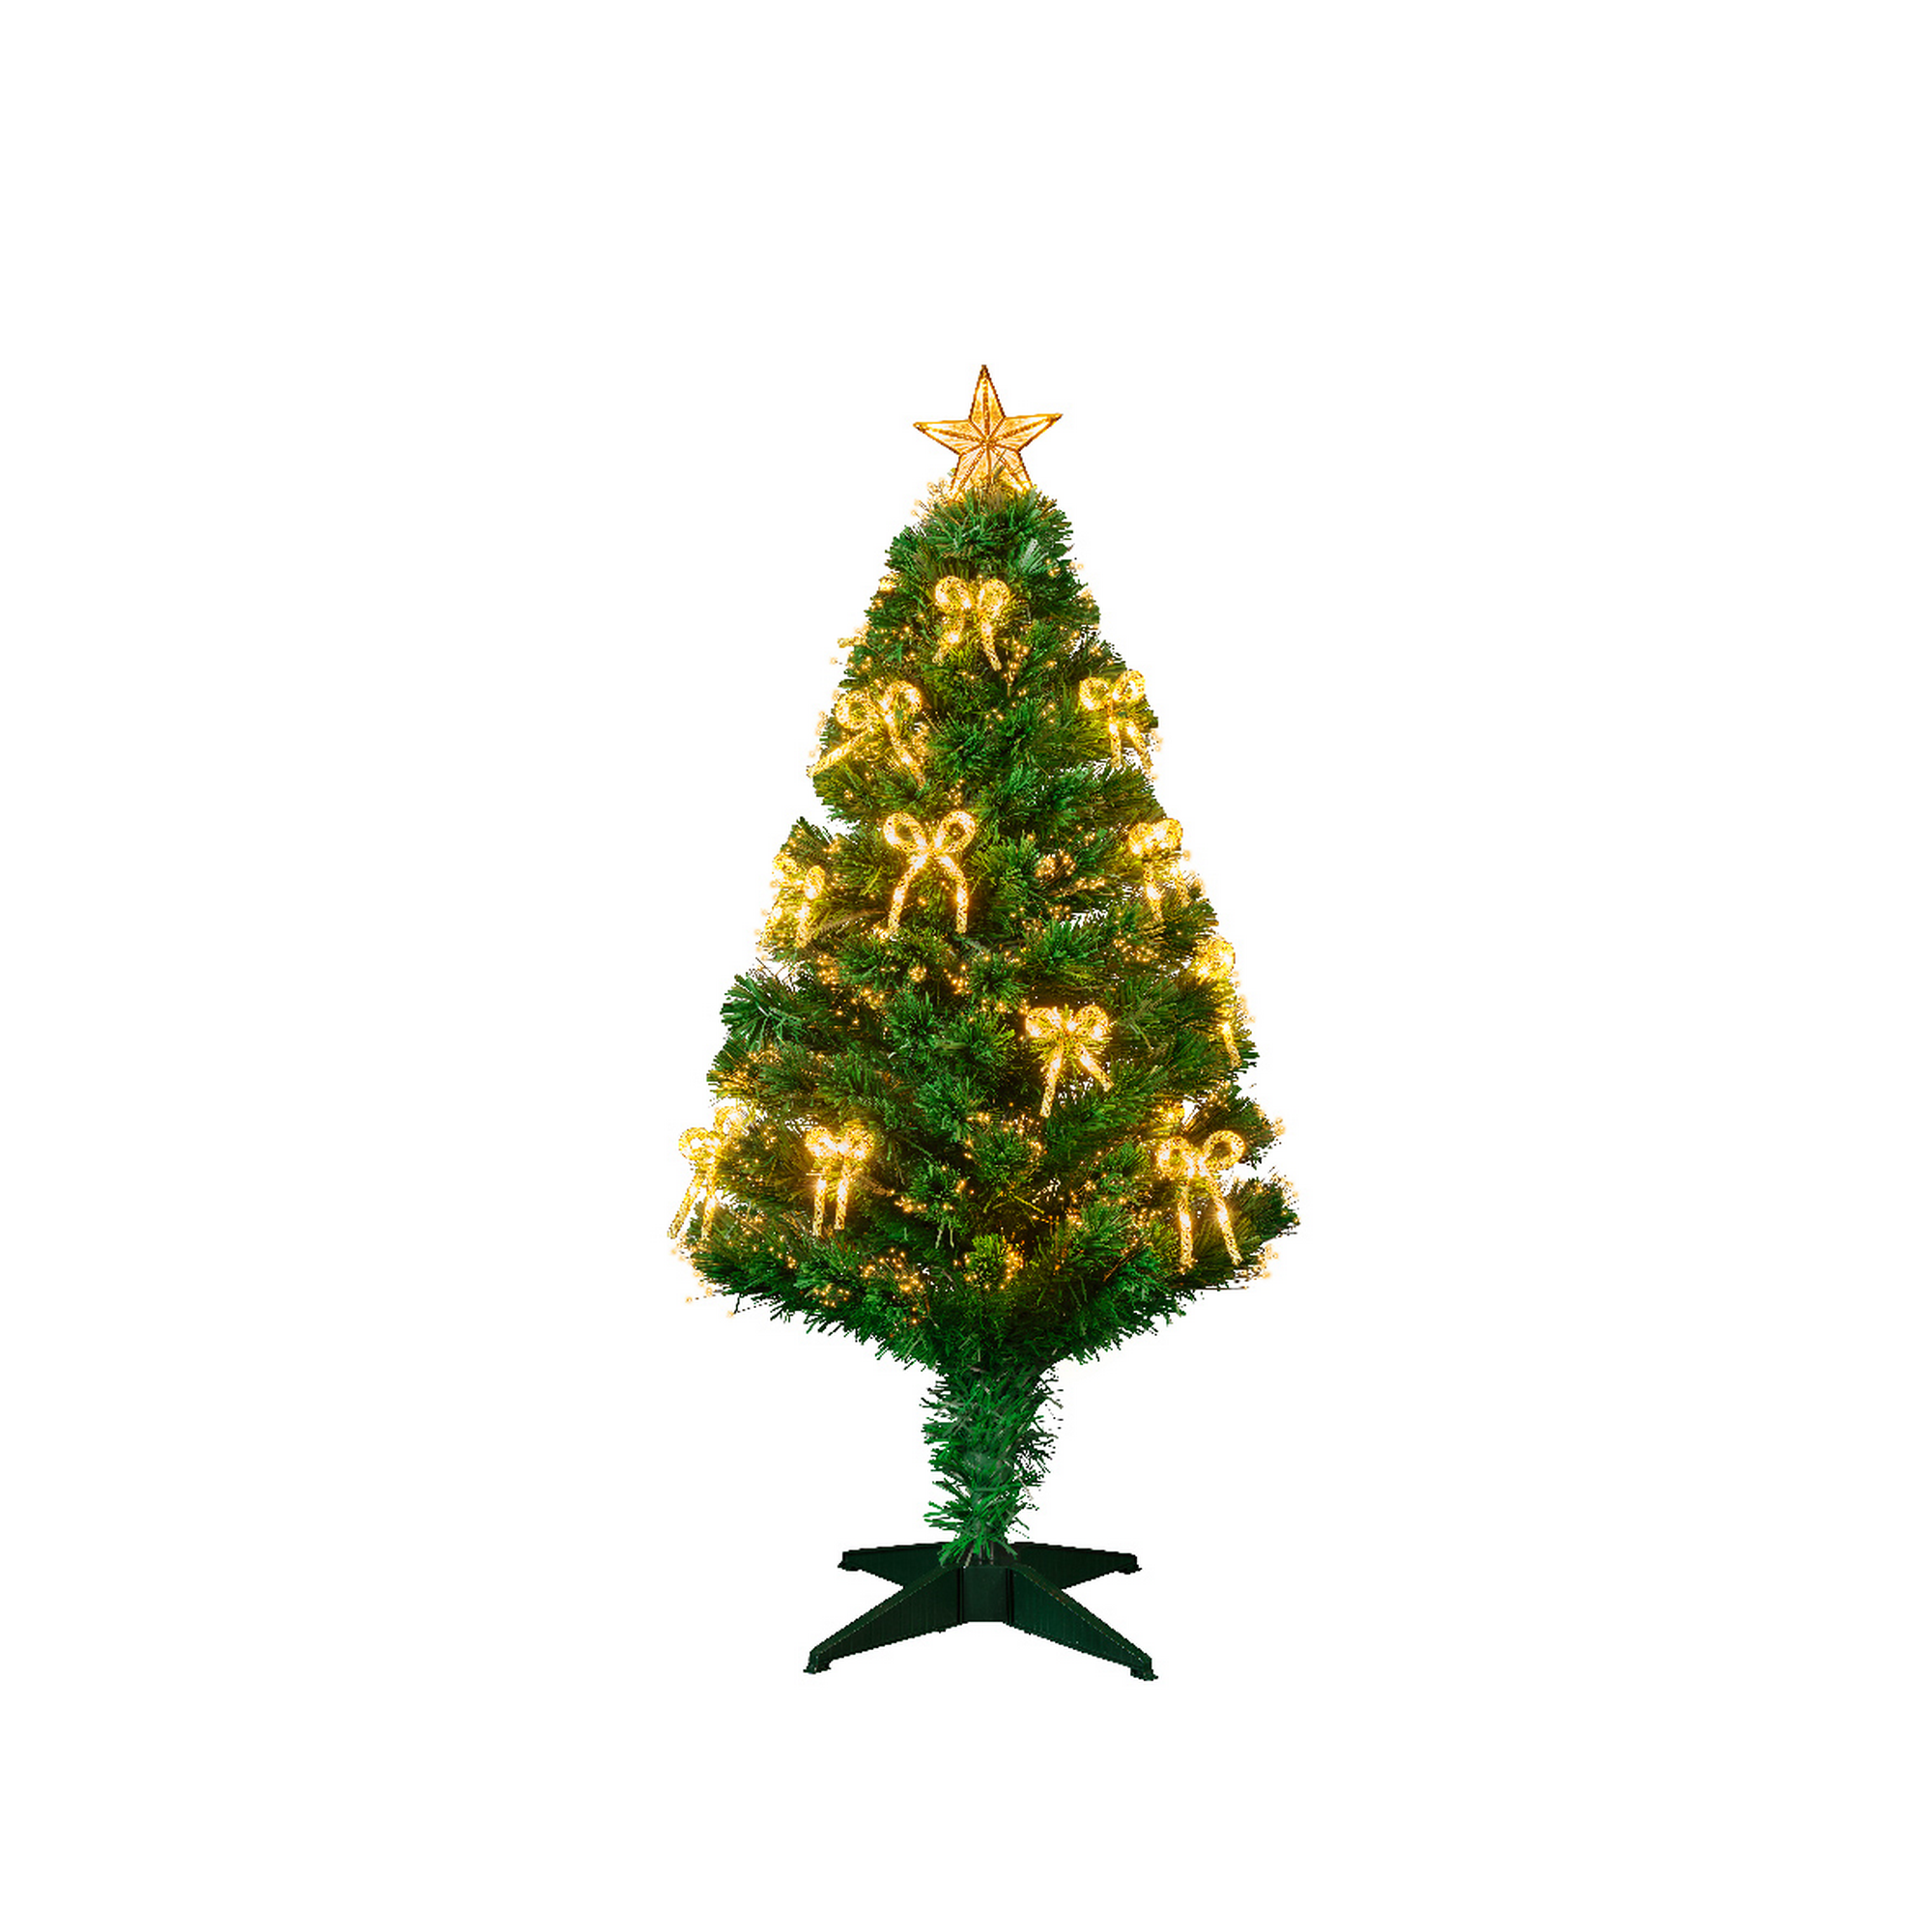 Künstlicher Weihnachtsbaum 'Birmingham' grün 120 cm, mit LED-Beleuchtung + product picture